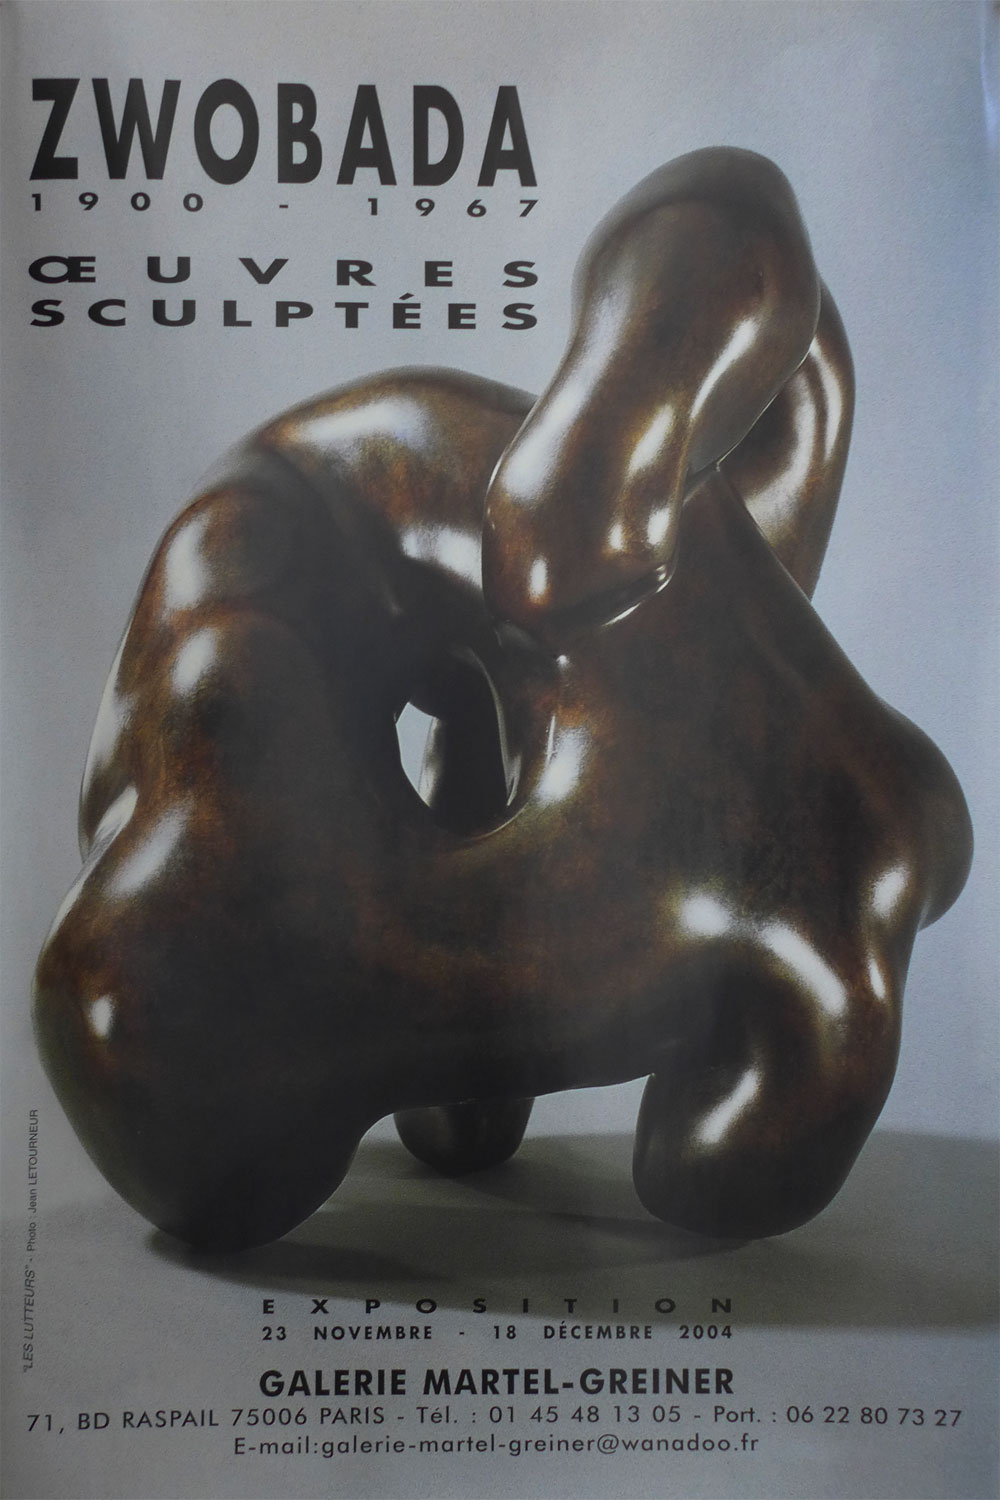 ZWOBADA – OEUVRES SCULPTÉES - 23 novembre – 16 décembre 2004 - Galerie MARTEL-GREINER 71, bd Raspail 75006 PARIS